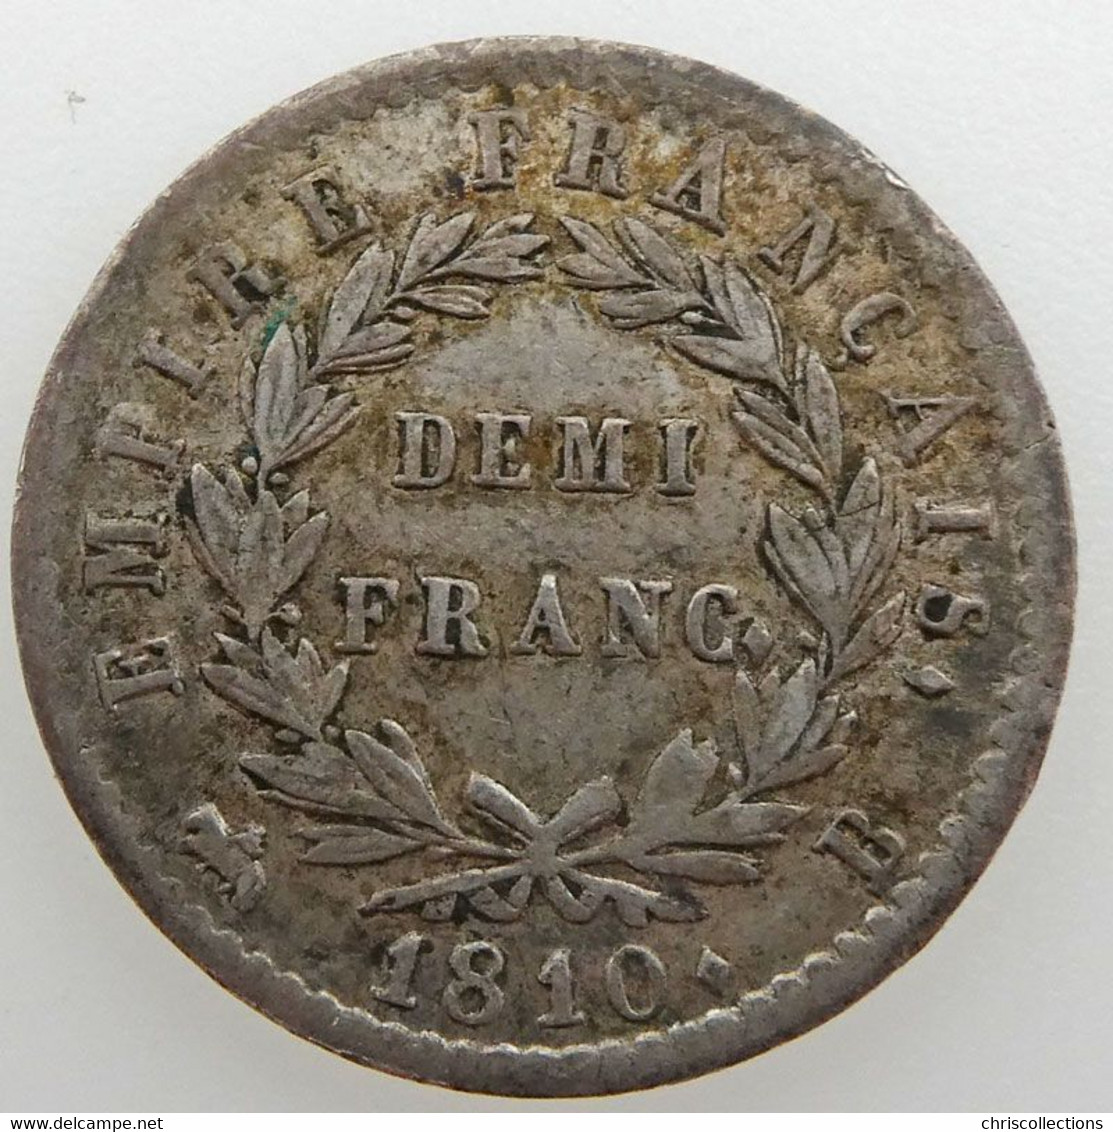 Napoléon I, Demi-Franc 1810 B, TTB, KM#691.2 - 1/2 Franc